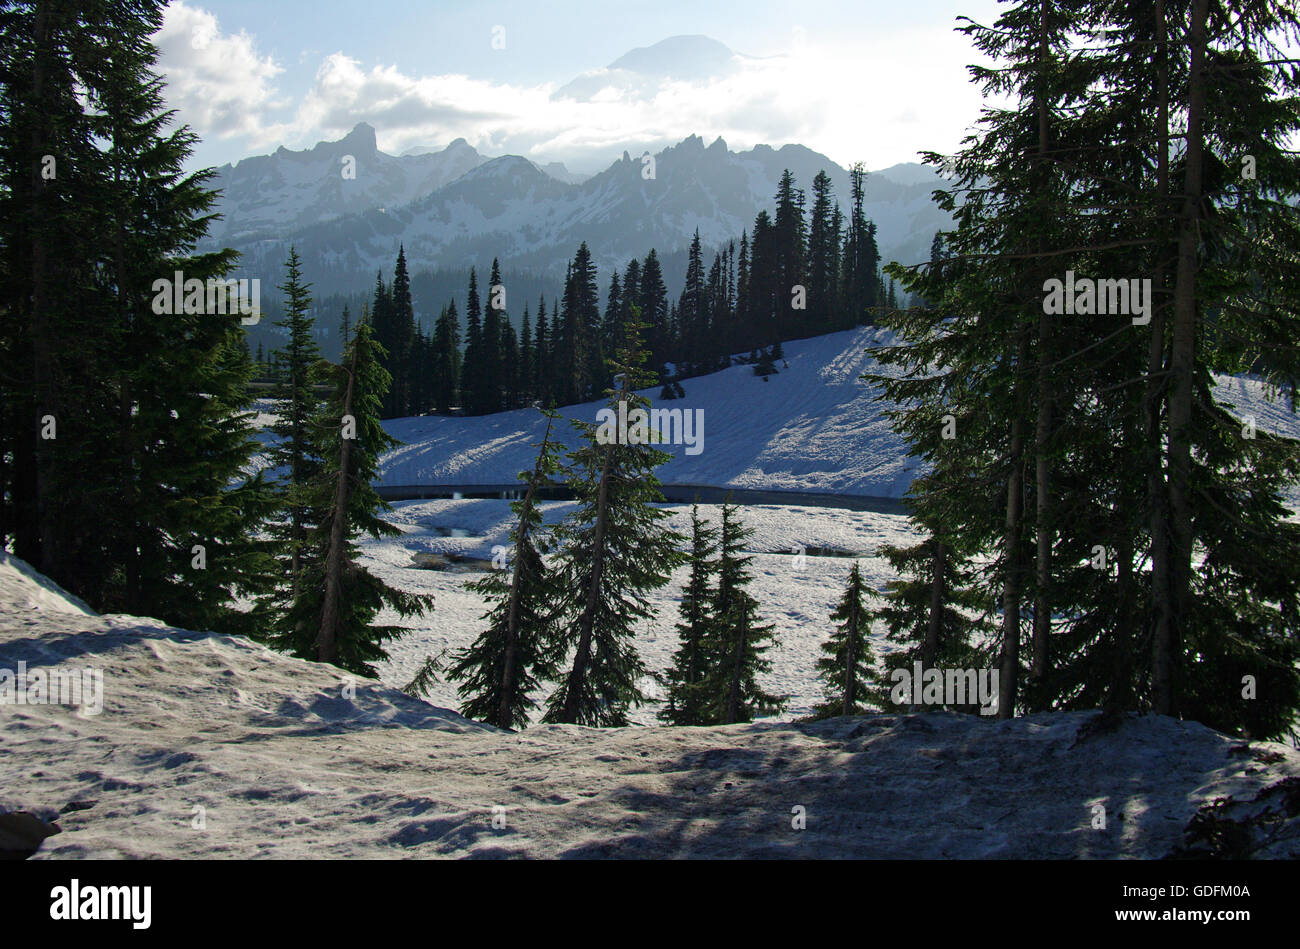 Le magnifique col Chinook des Cascade Mountains, dans le parc national du Mont Rainier de Washington, est encore recouvert de neige en juillet. Banque D'Images